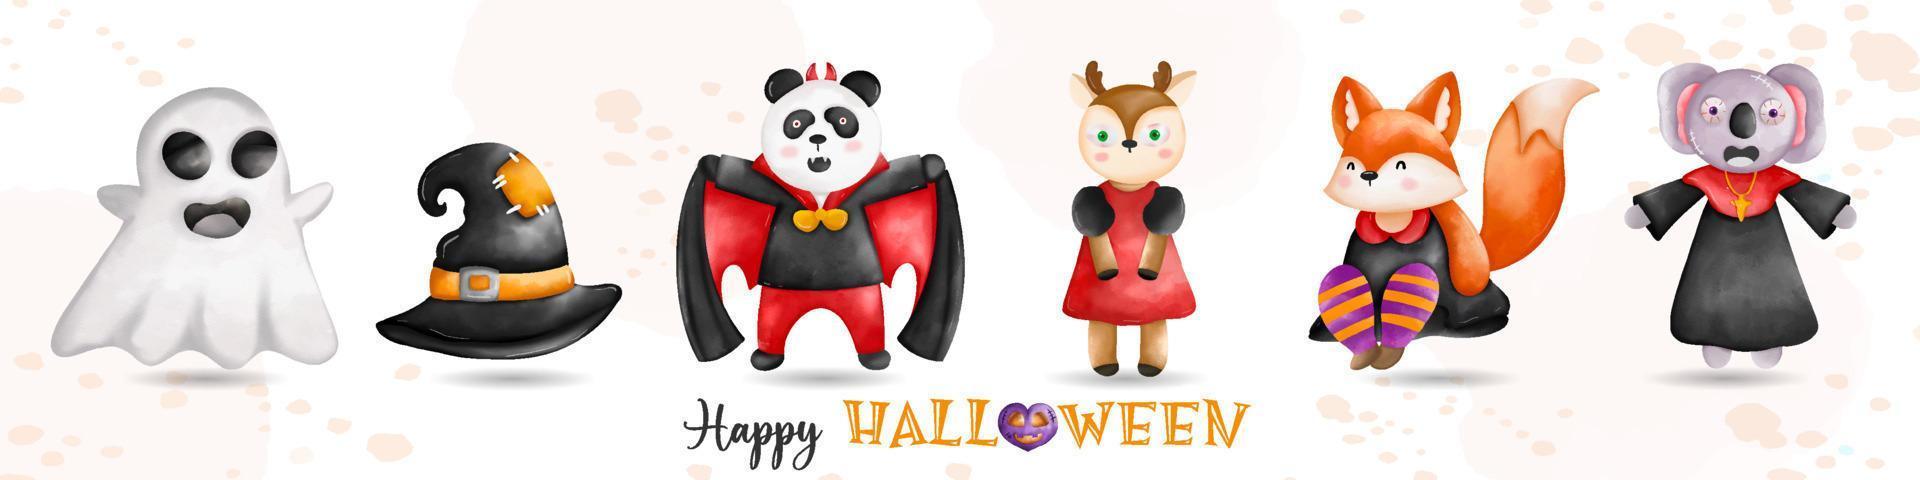 halloween vakantie dieren composities illustratie. schattig geest, panda, hert, vos, koala halloween vector